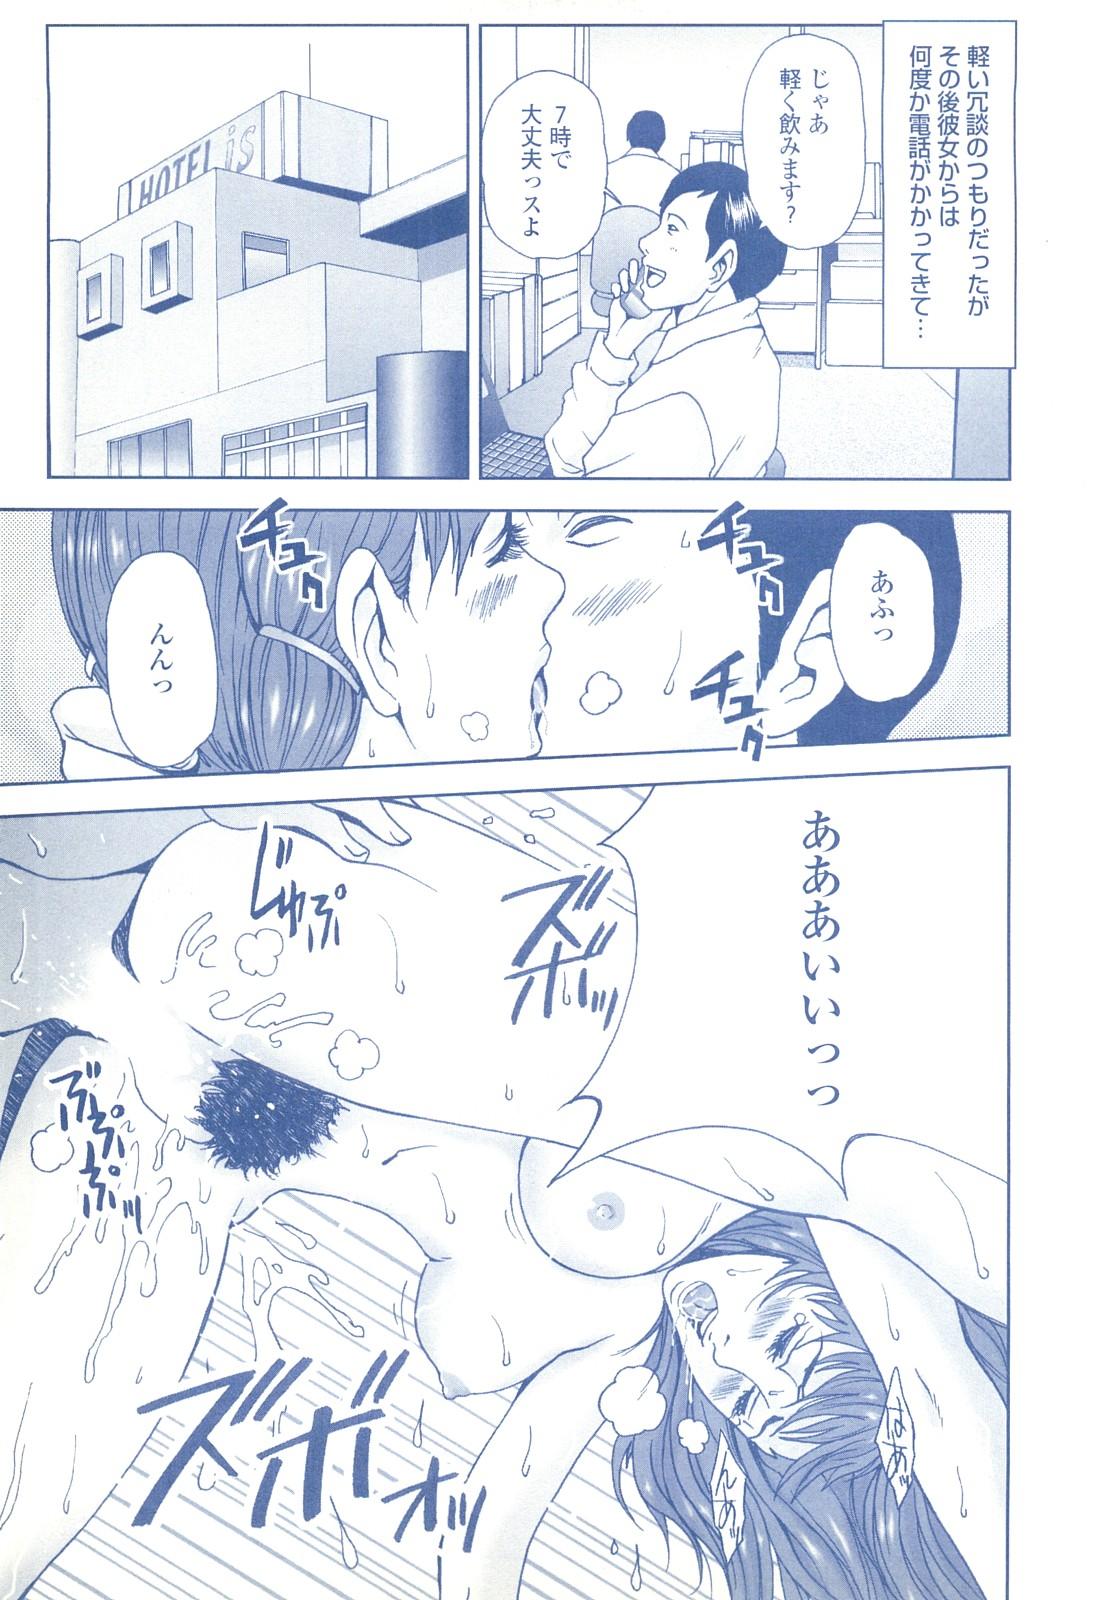 コミック裏モノJAPAN Vol.18 今井のりたつスペシャル号 230